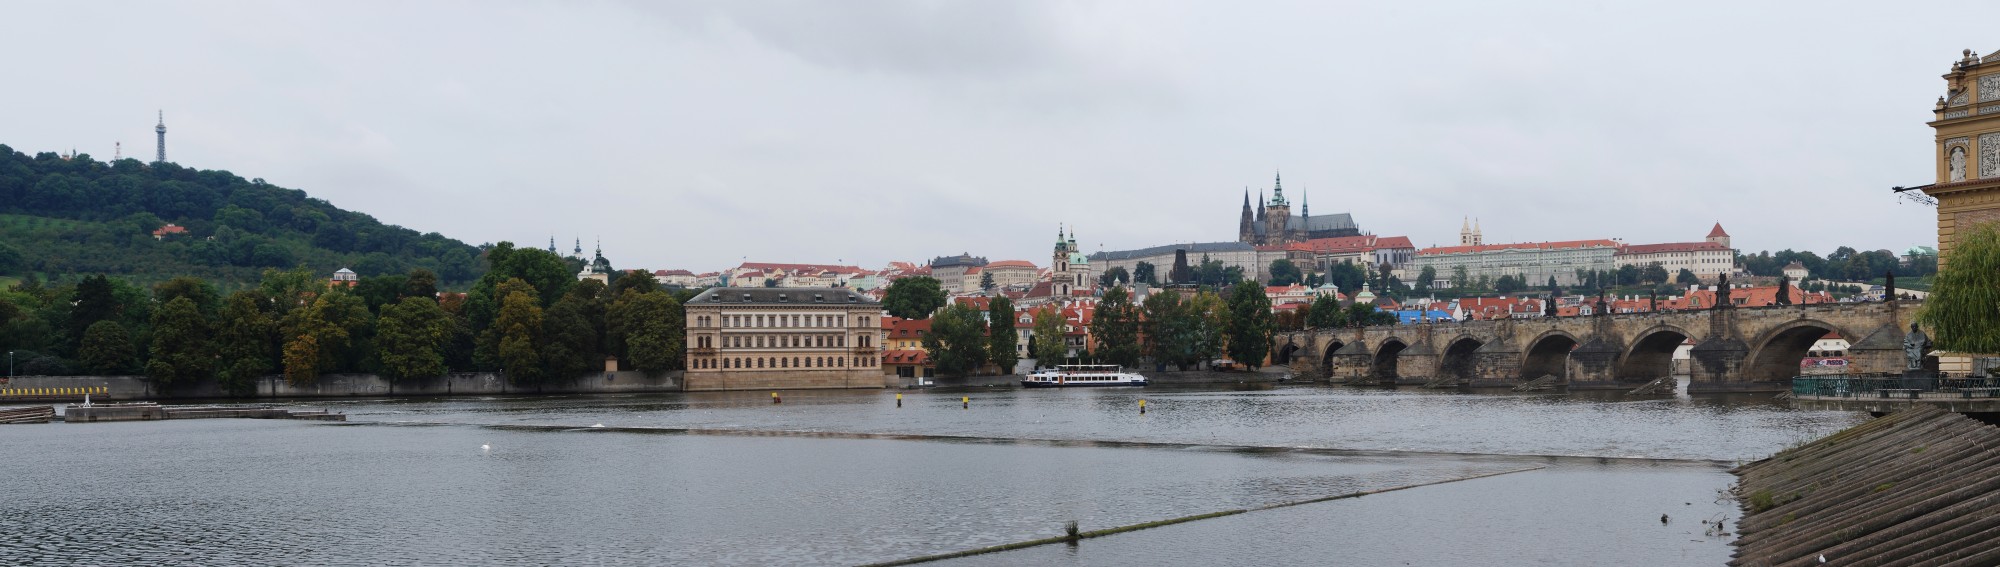 Prag Burg Panorama 2014